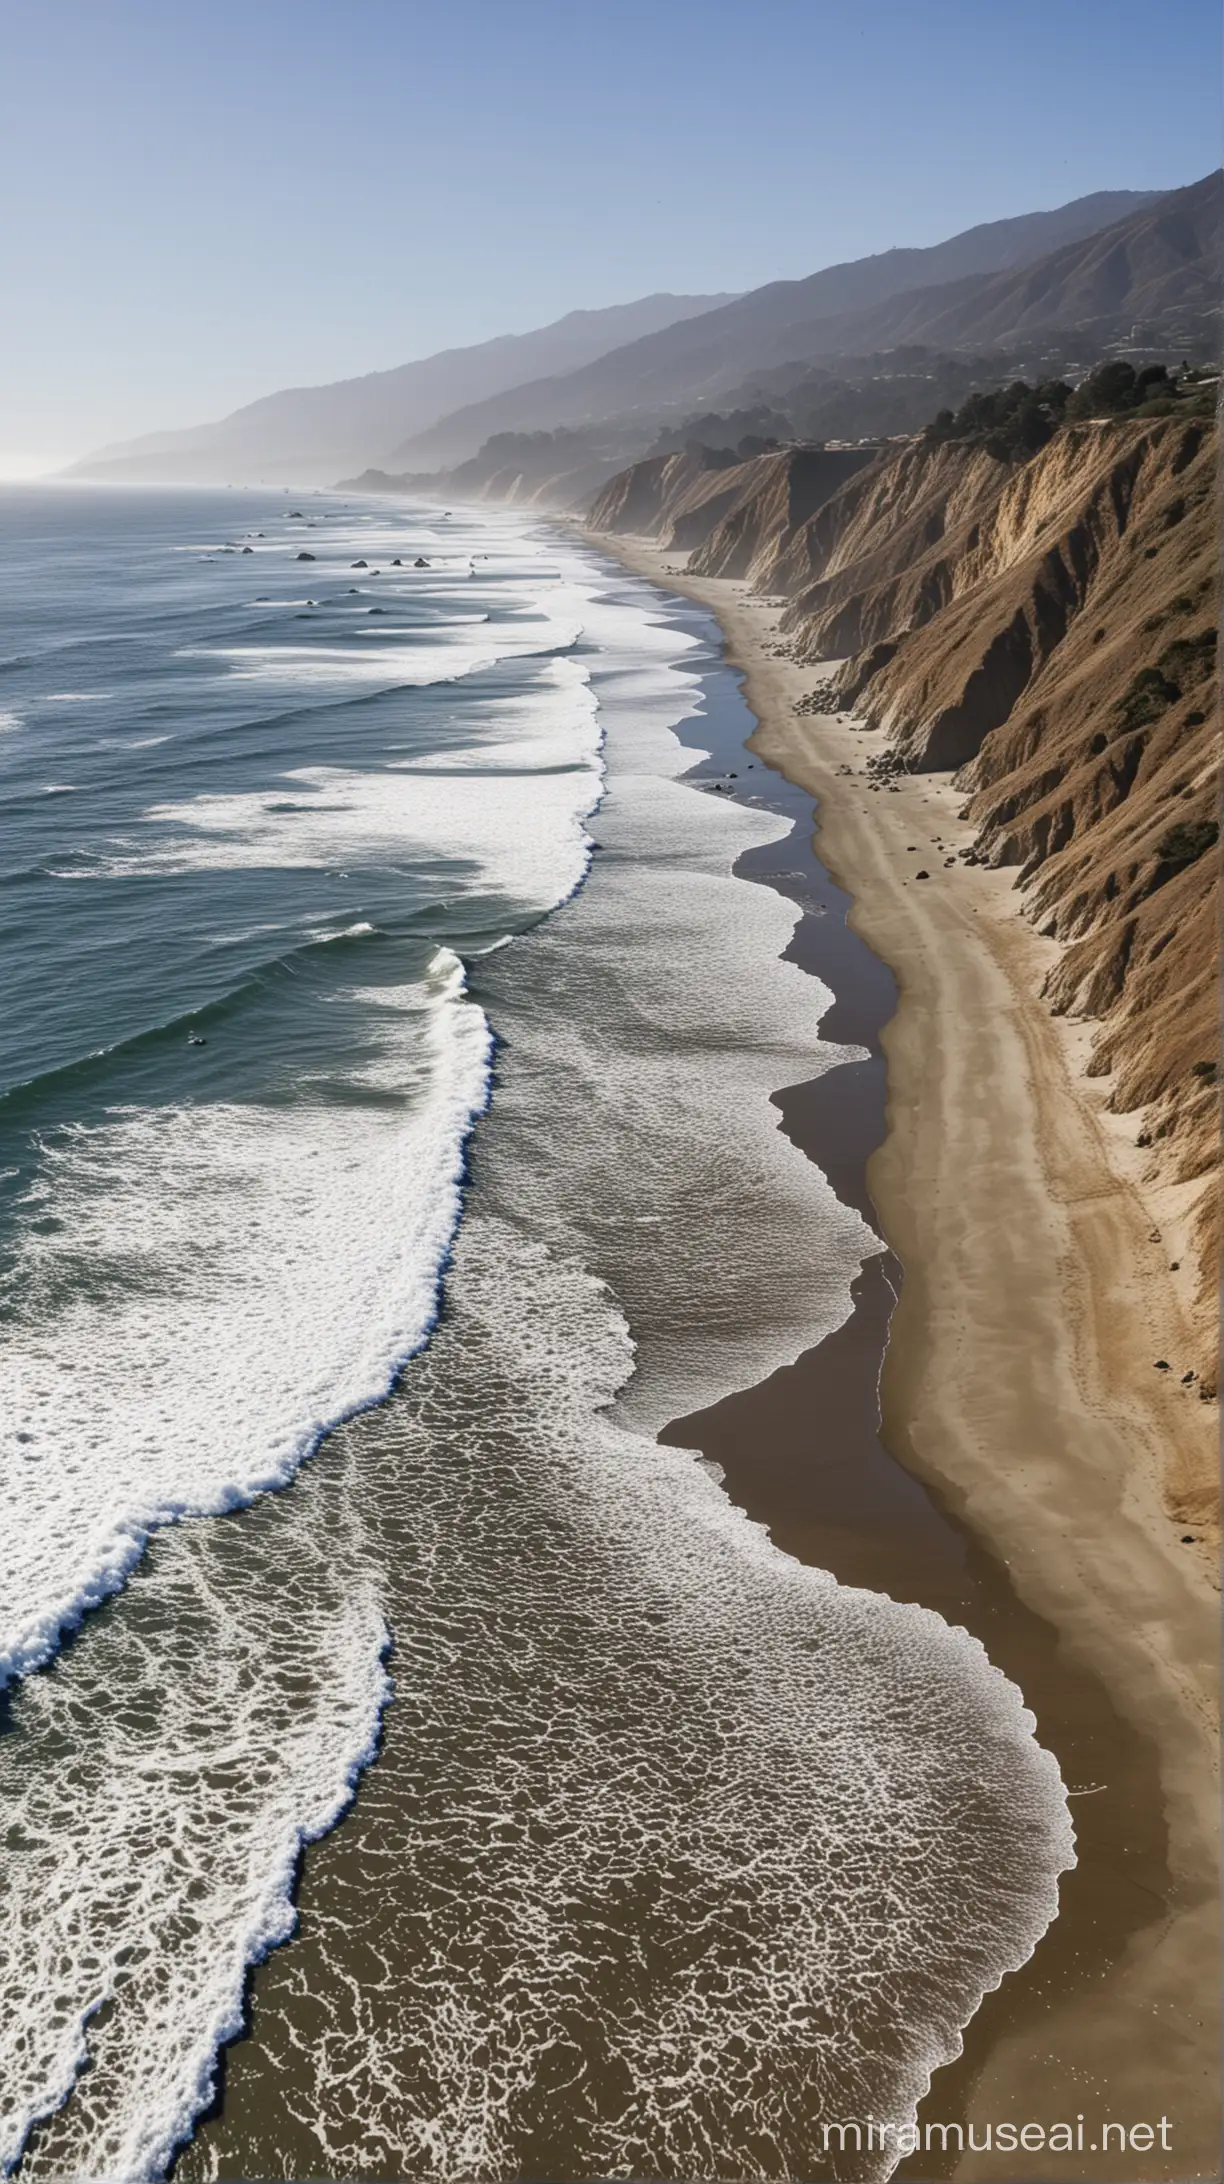 sea level rise on the california coast